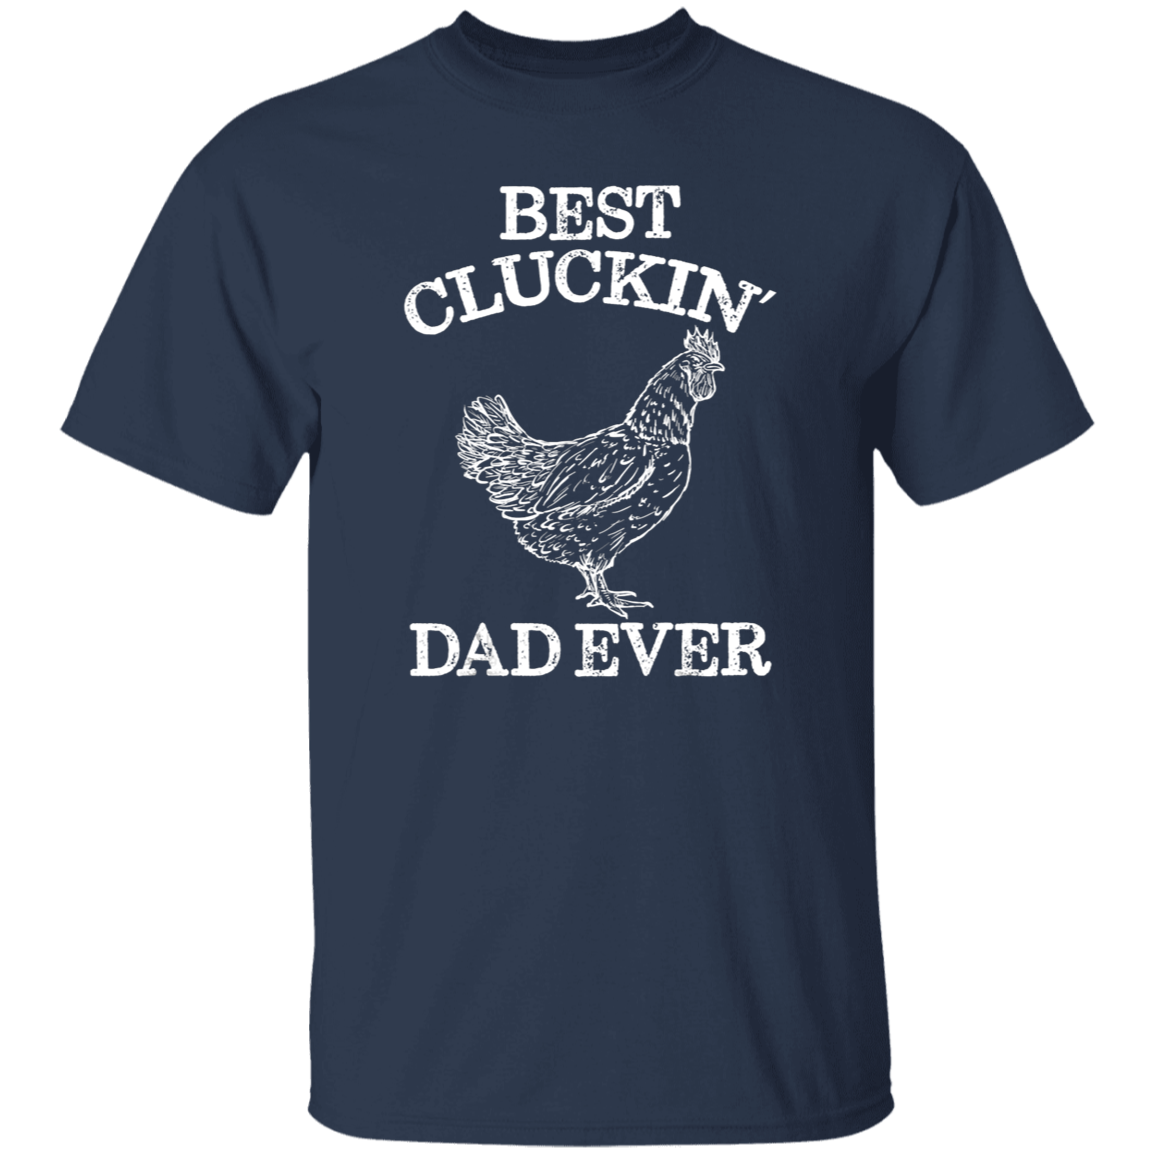 Best Cluckin’ Dad T-Shirt